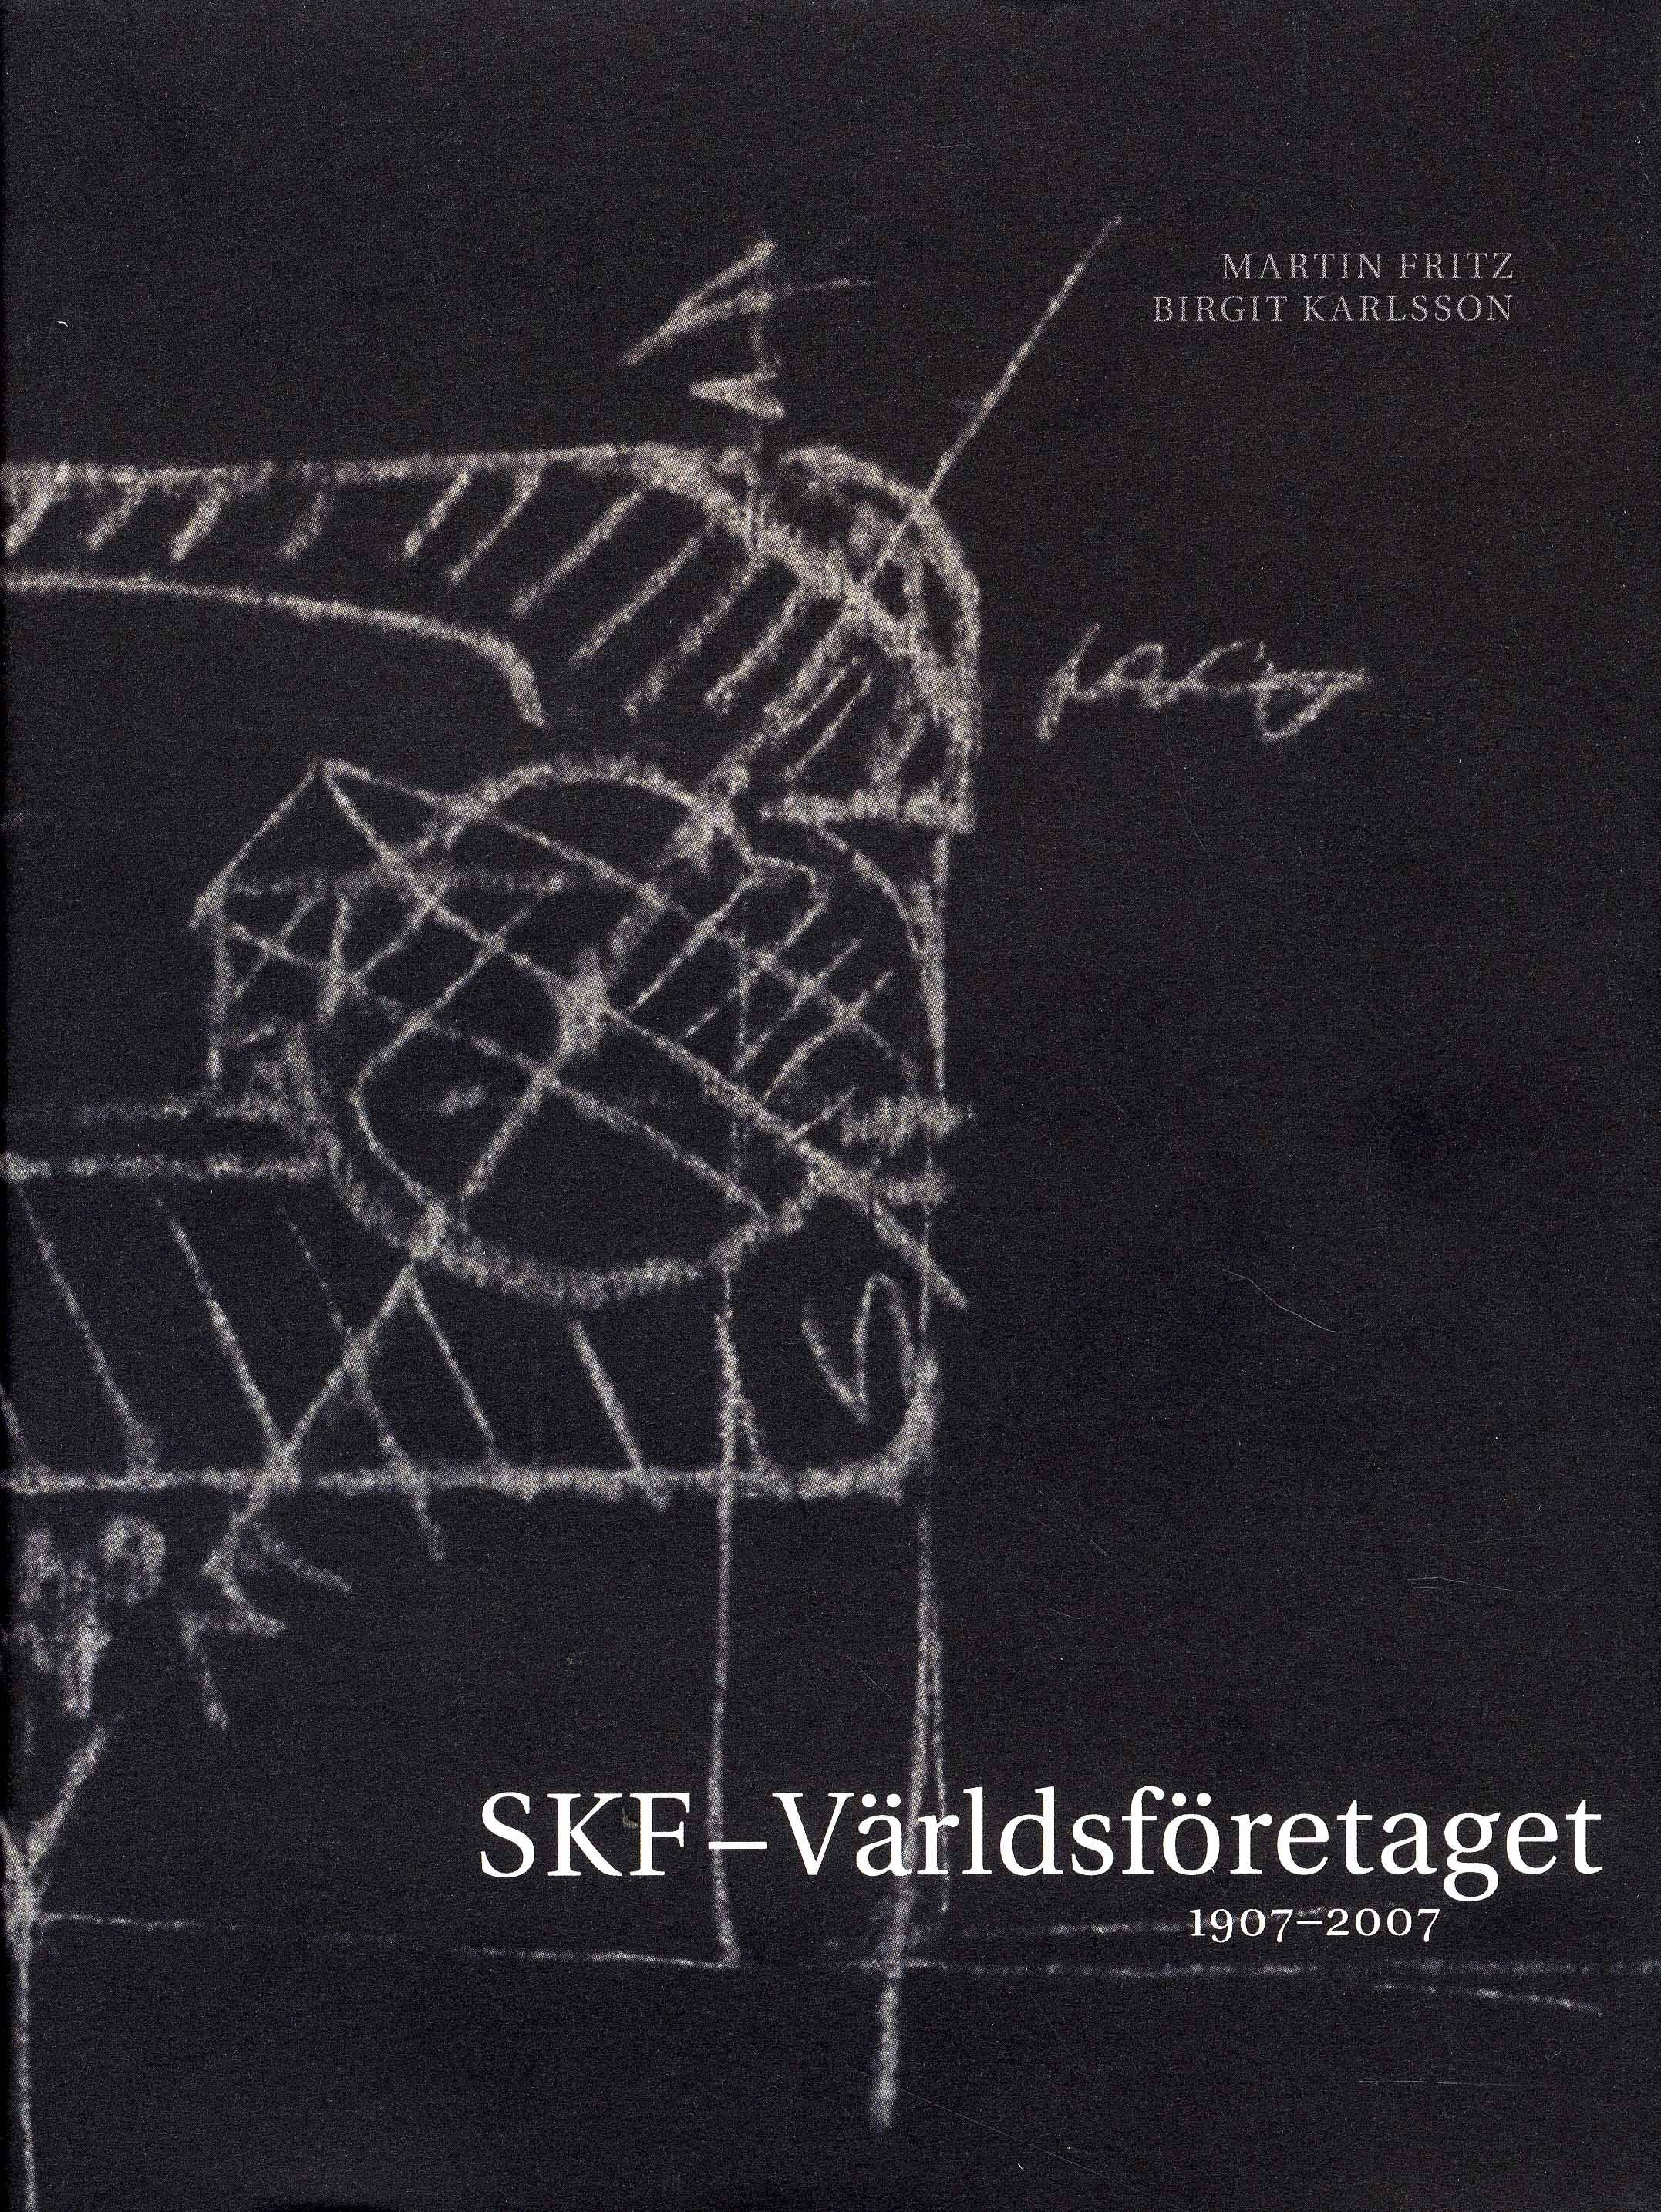 SKF - Världsföretaget 1907-2007